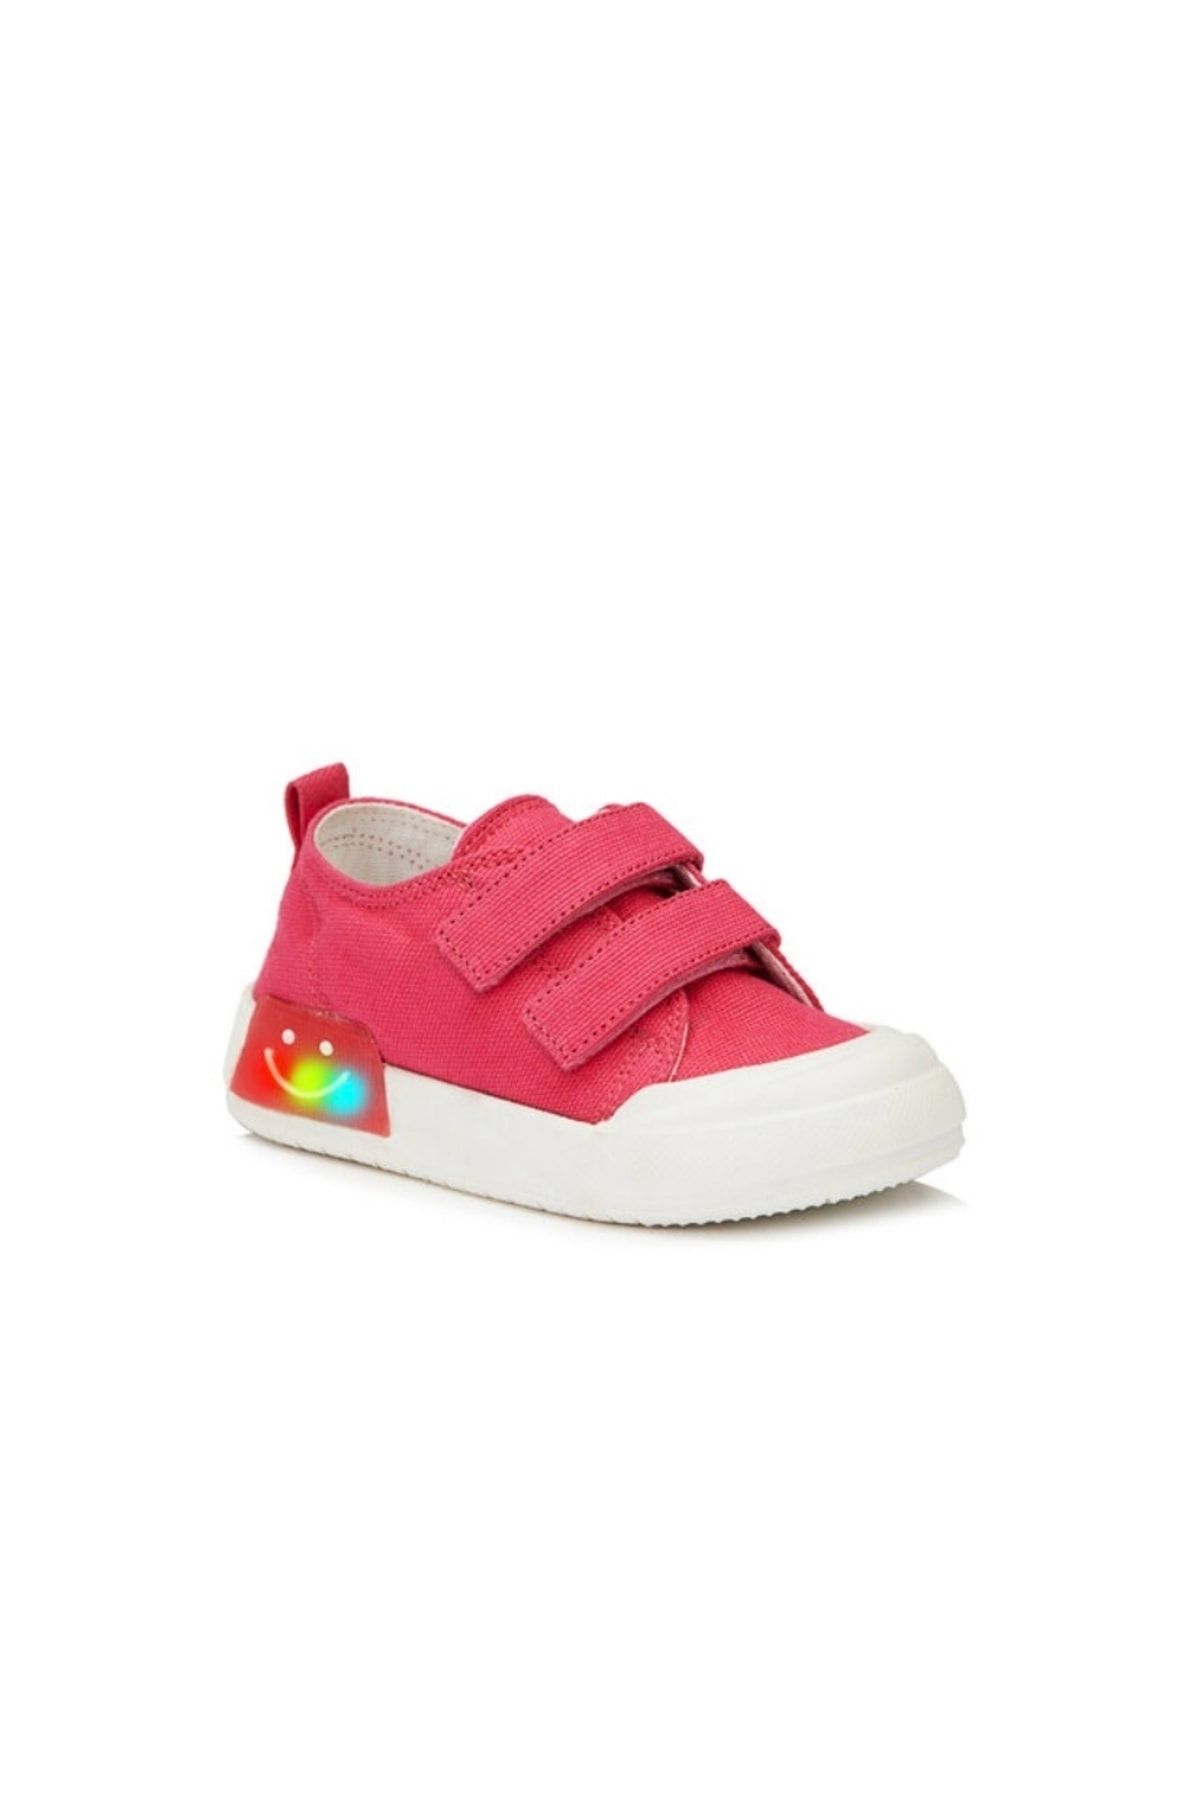 Vicco Luffy Işıklı Kız Bebek Fuşya Spor Ayakkabı